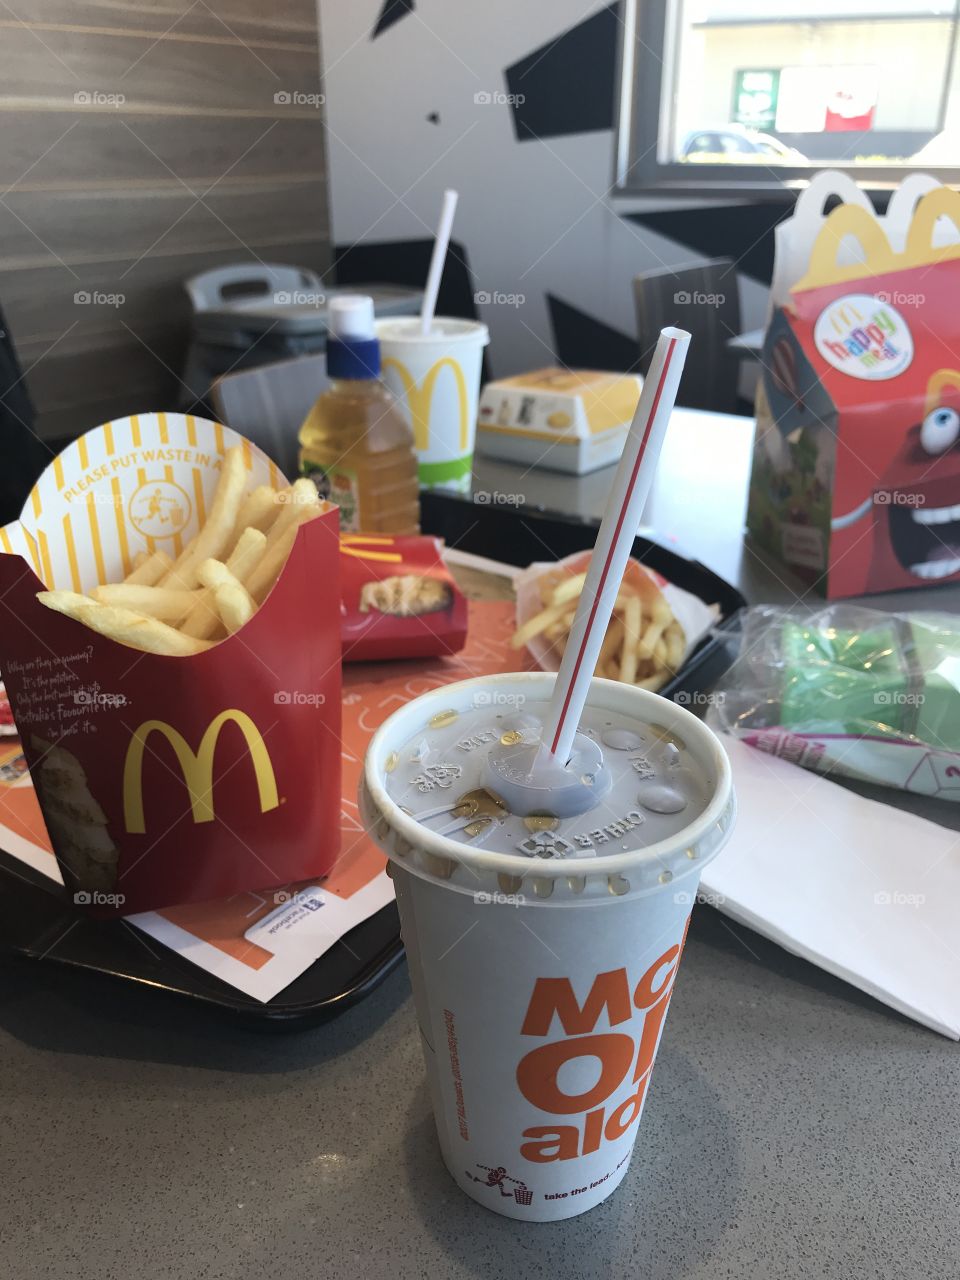 Eating at McDonald’s 